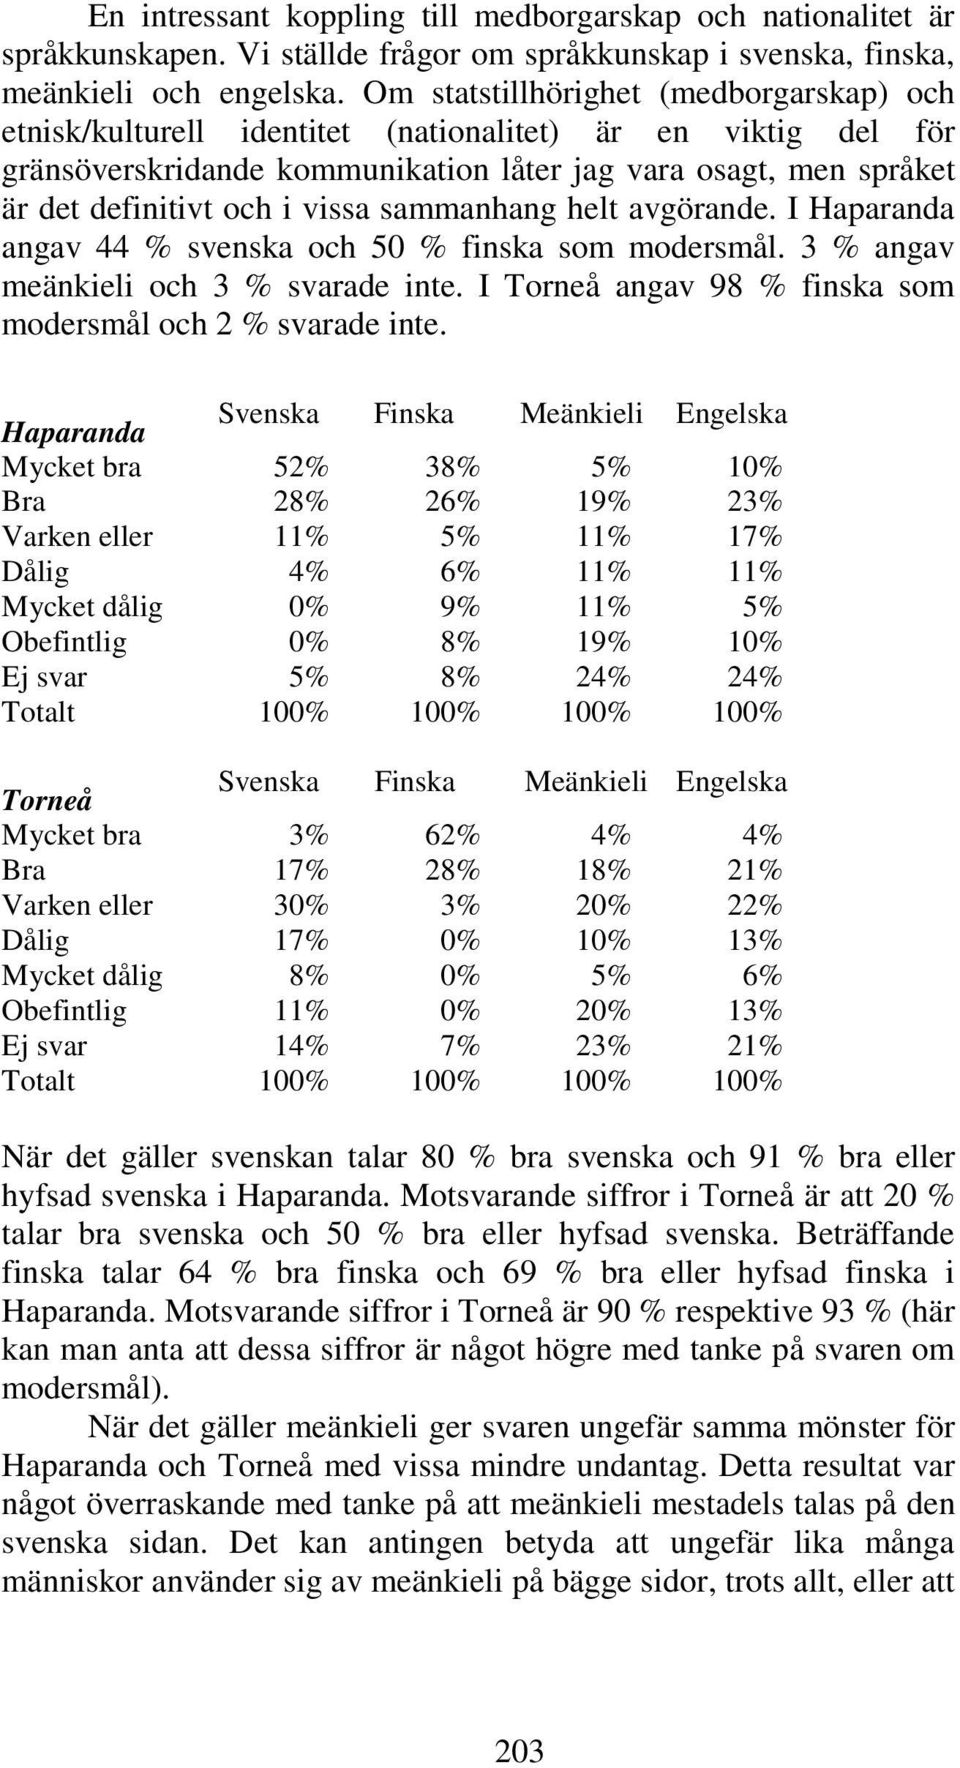 vissa sammanhang helt avgörande. I Haparanda angav 44 % svenska och 50 % finska som modersmål. 3 % angav meänkieli och 3 % svarade inte. I Torneå angav 98 % finska som modersmål och 2 % svarade inte.